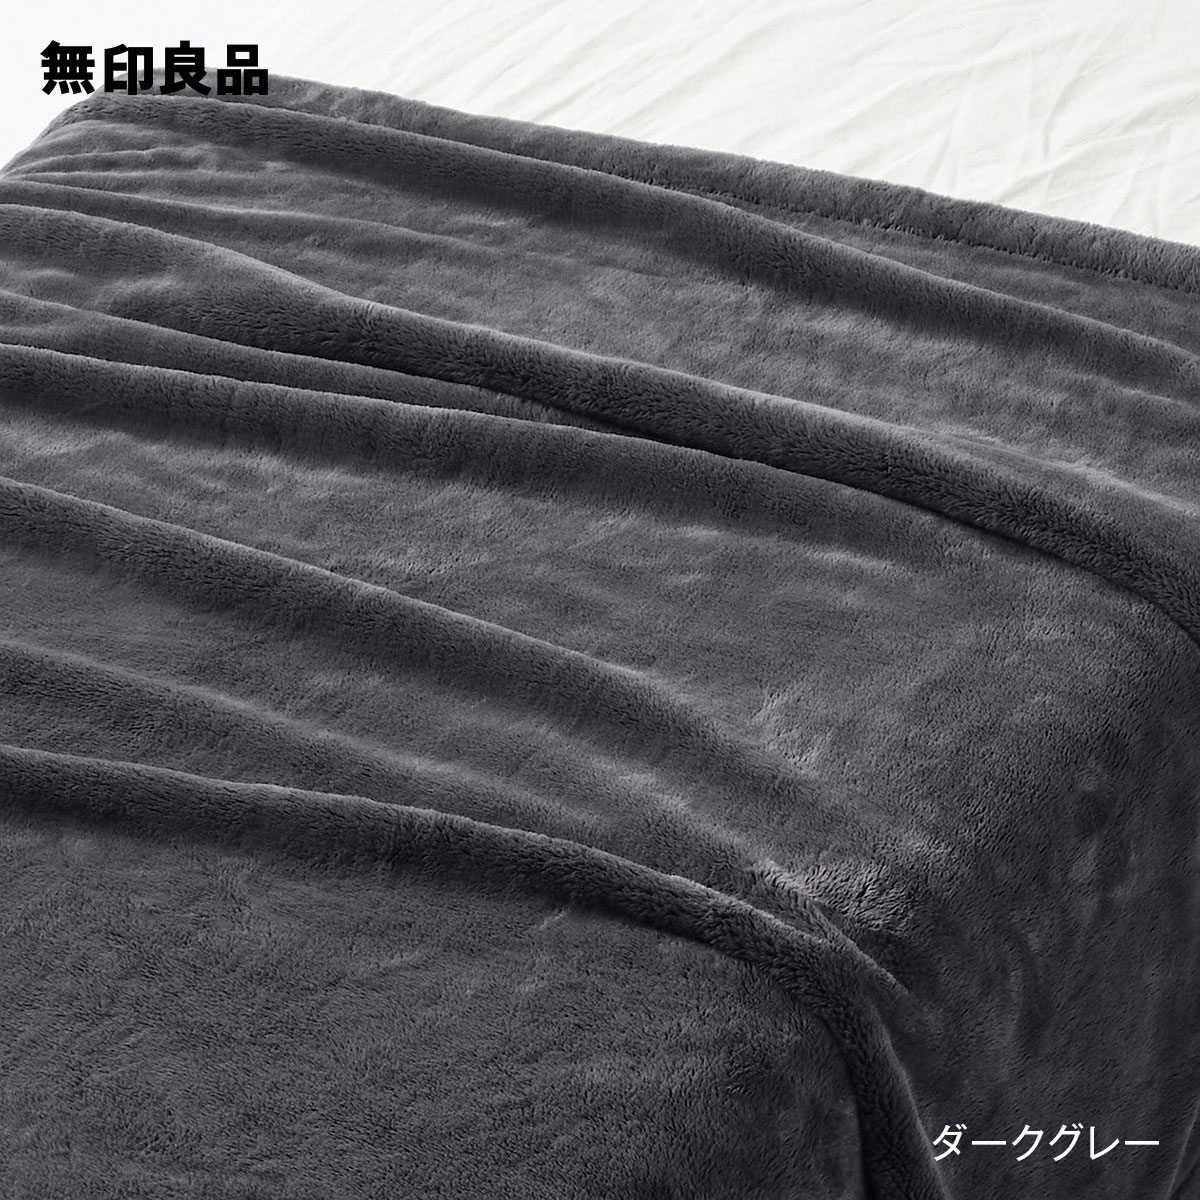 無印良品の【ダブル】ムレにくいあたたかファイバー厚手毛布・180×200cm(布団・寝具)